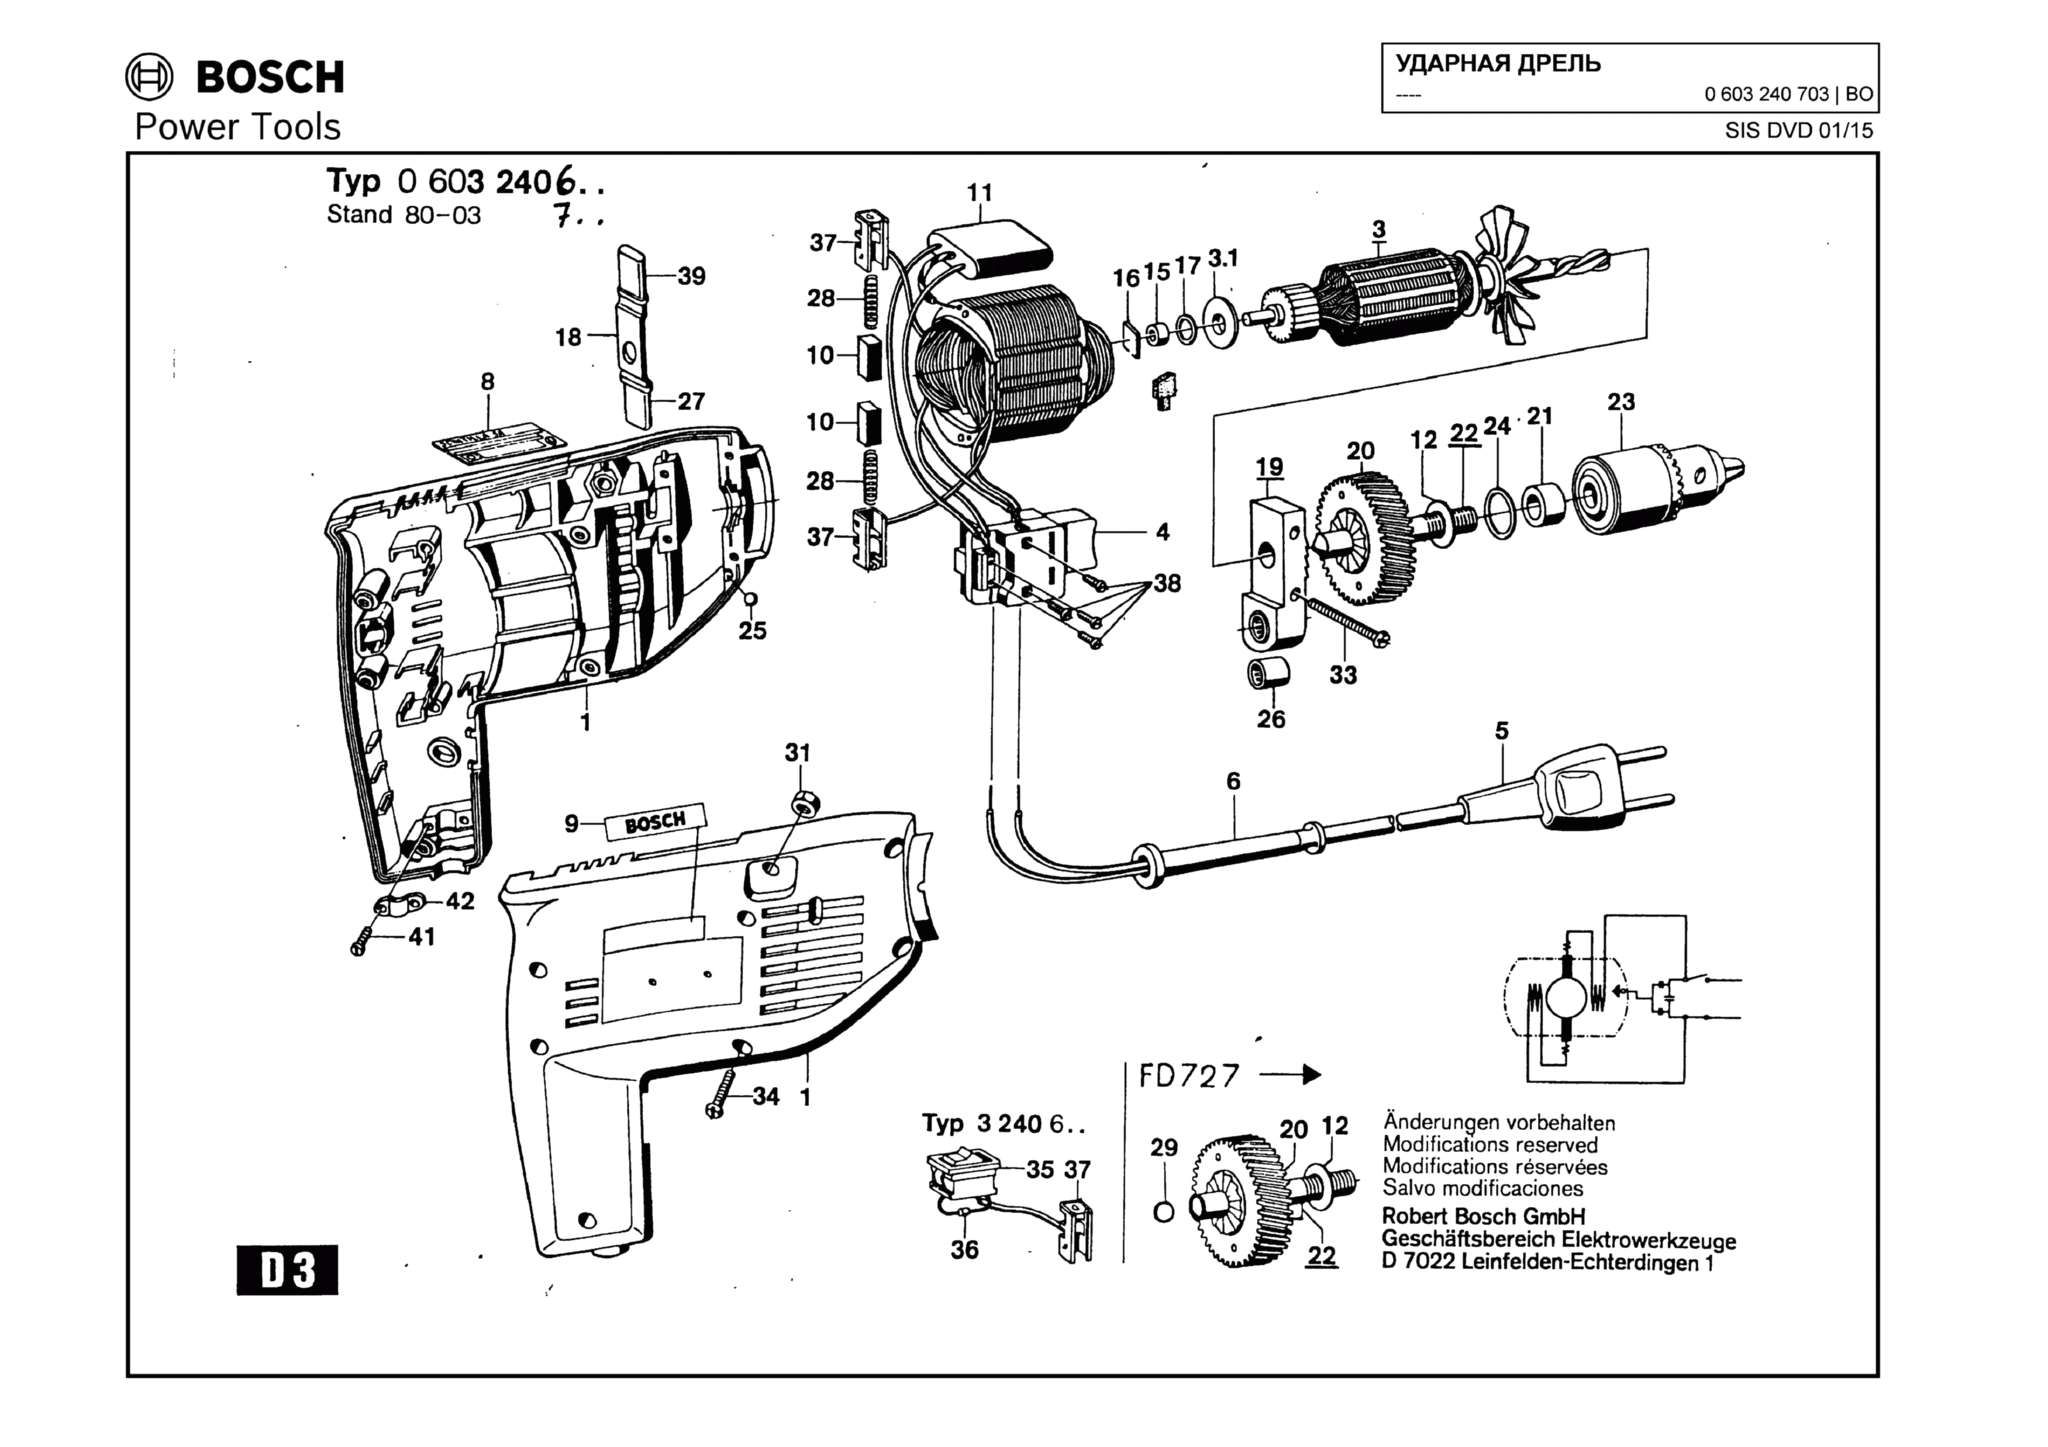 Запчасти, схема и деталировка Bosch (ТИП 0603240703)